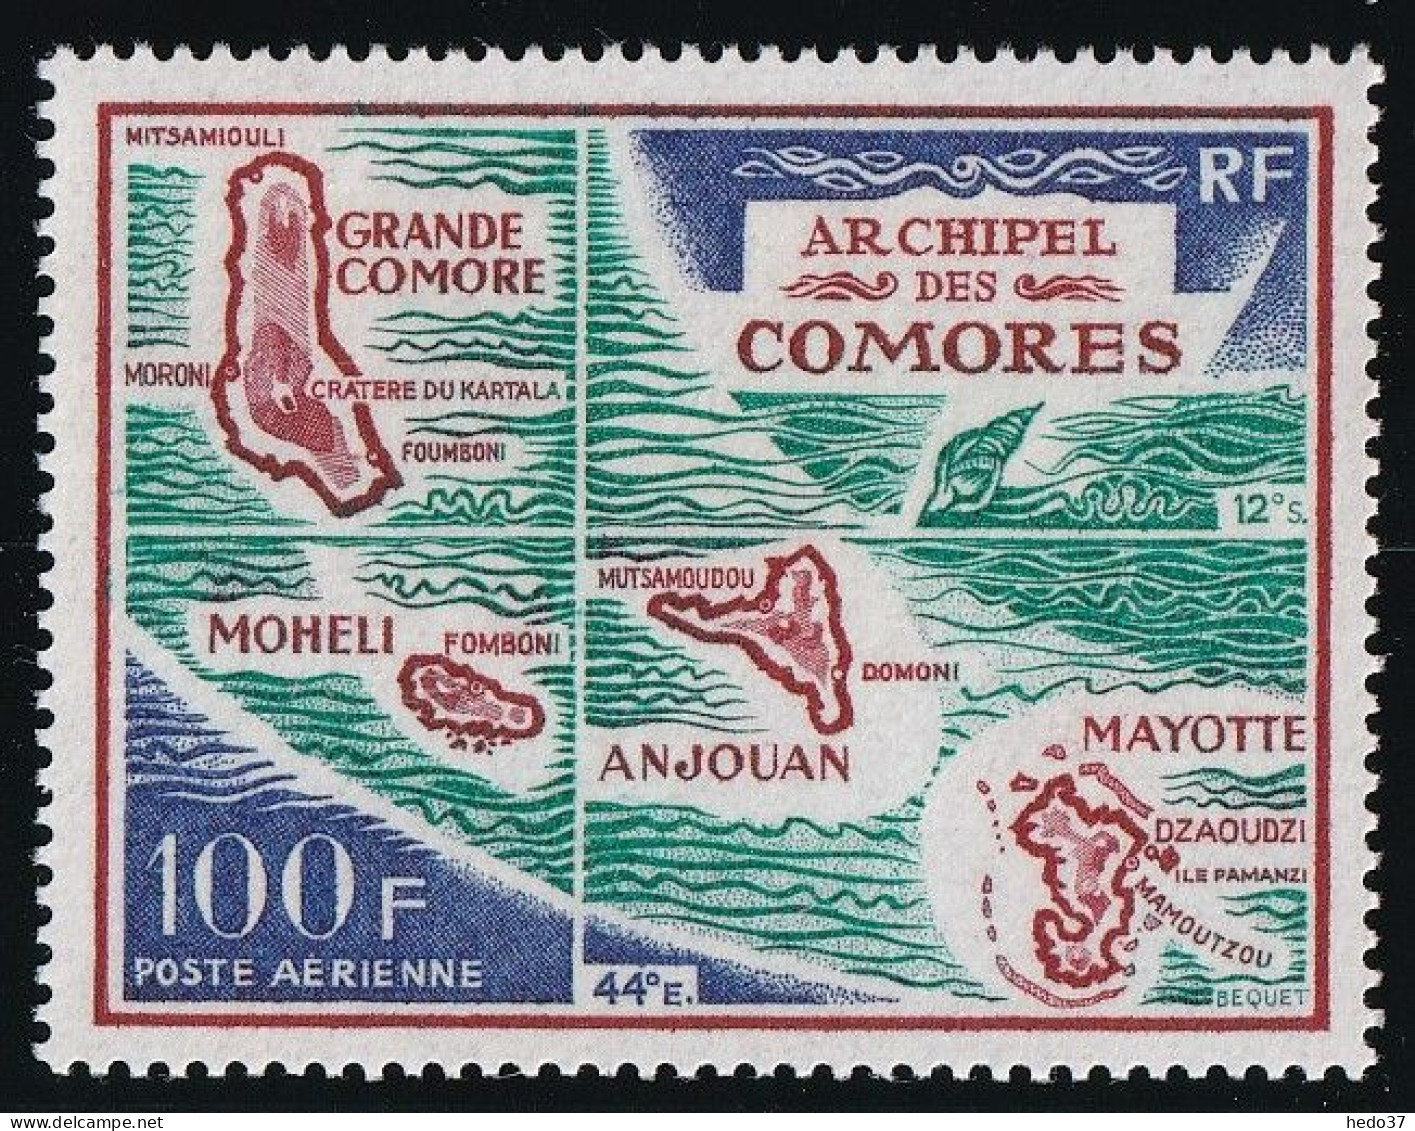 Comores Poste Aérienne N°36 - Neuf ** Sans Charnière - TB - Luftpost